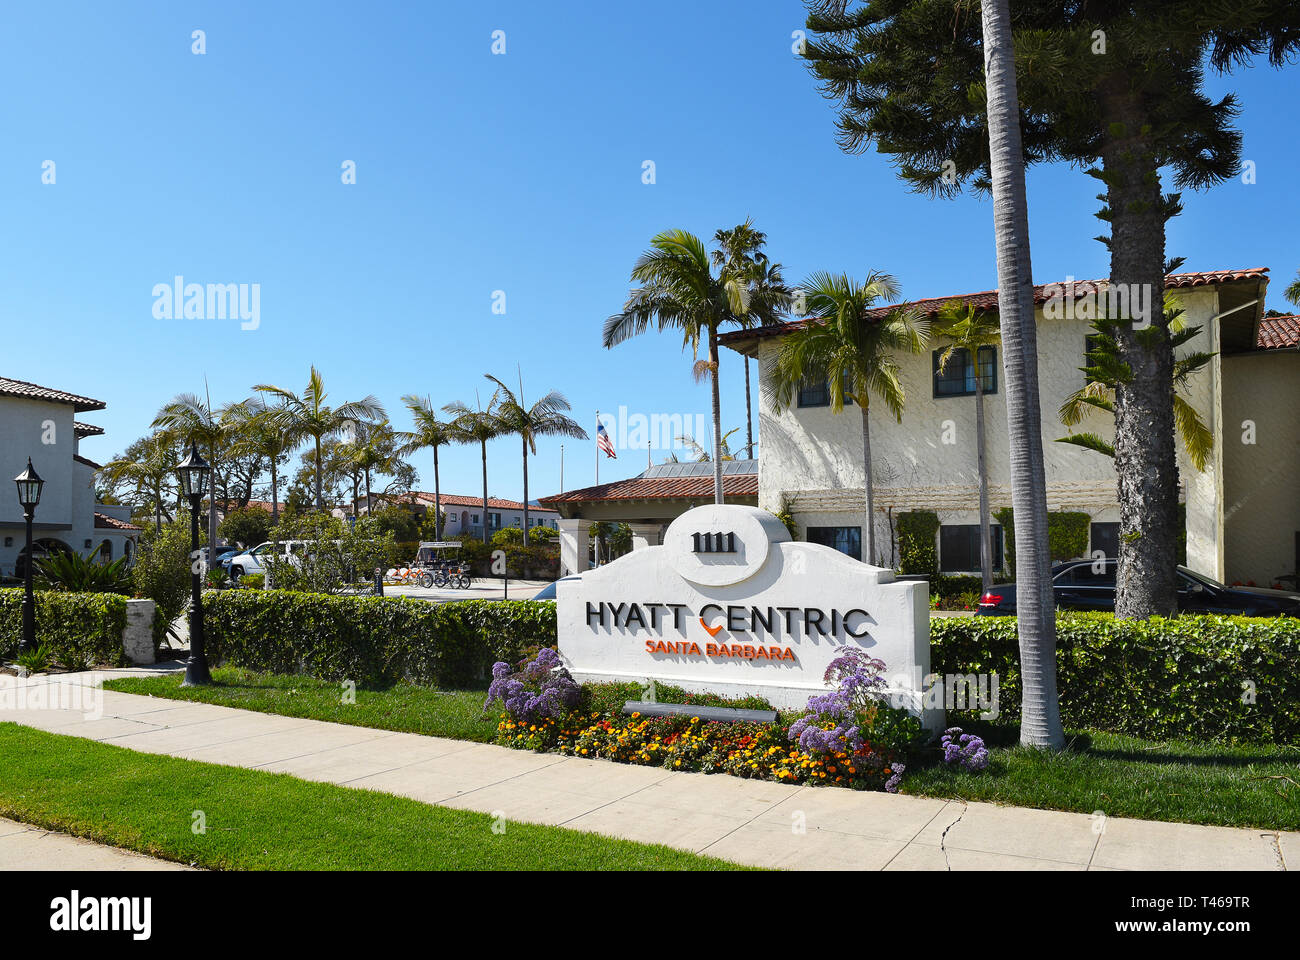 SANTA BARBARA, CALIFORNIE - Le 11 avril 2019 : Hyatt Hôtel Central est situé en face de la plage de l'Est, construit dans les années 1930 style colonial espagnol, à seulement 1 mile fro Banque D'Images